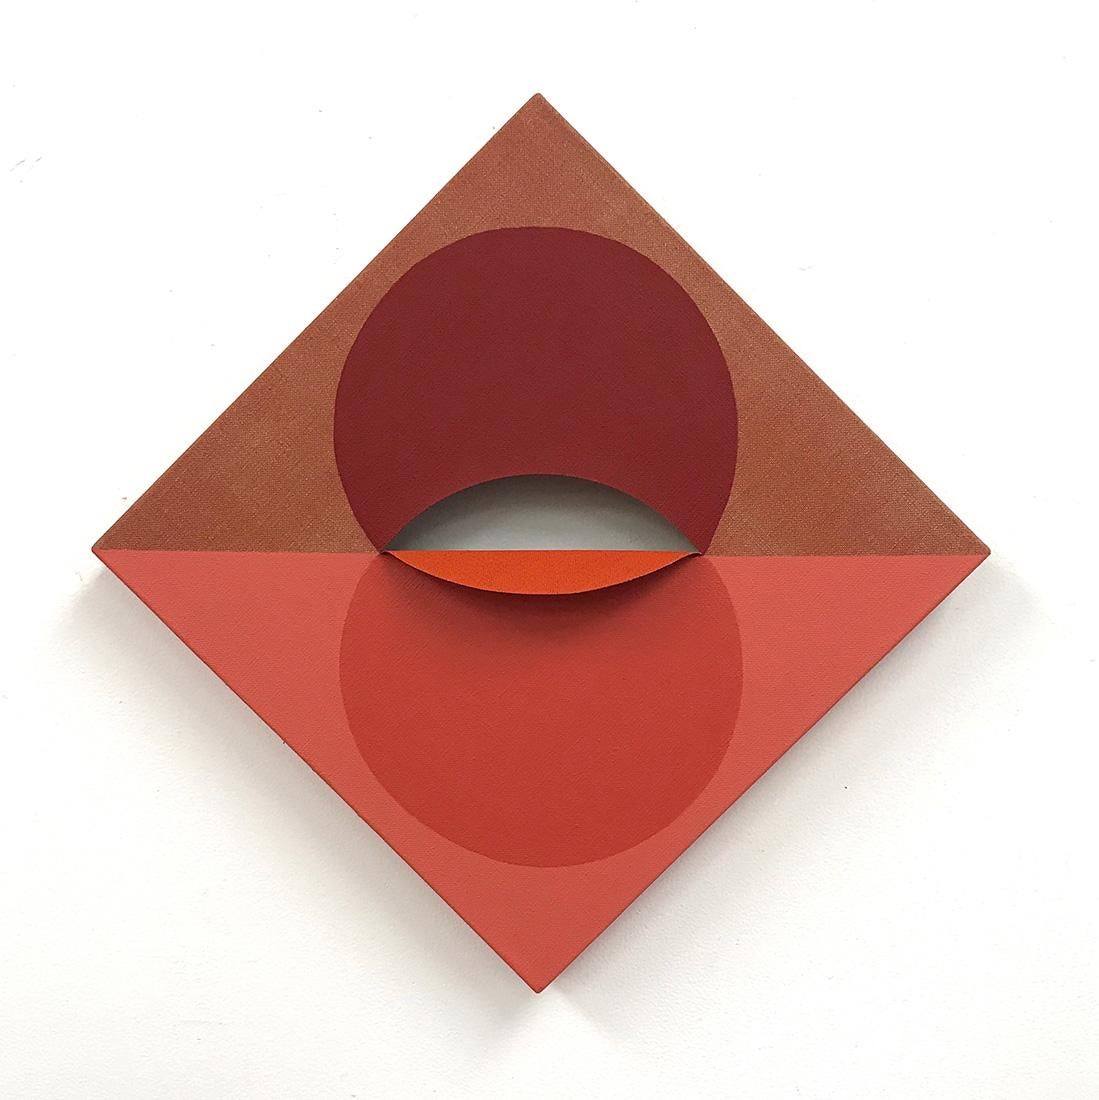 Abstract Painting Linda King Ferguson - EQUIVALENCE 92- Tint et acrylique sur lin découpé - Peinture géométrique abstraite rouge